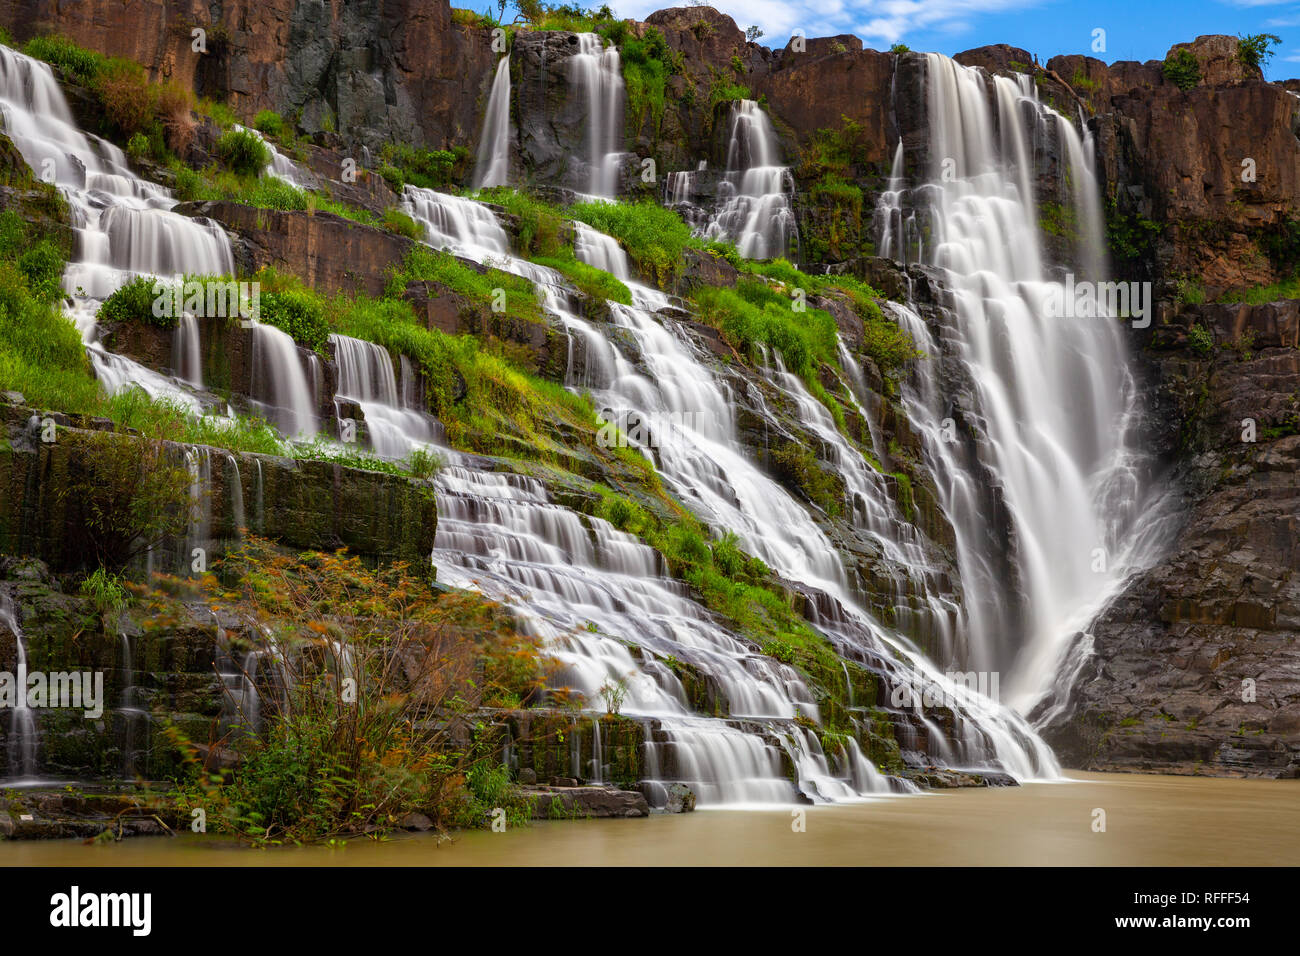 Un tiempo de exposición de las hermosas cascadas Pongour situado cerca de Dalat, Vietnam Foto de stock